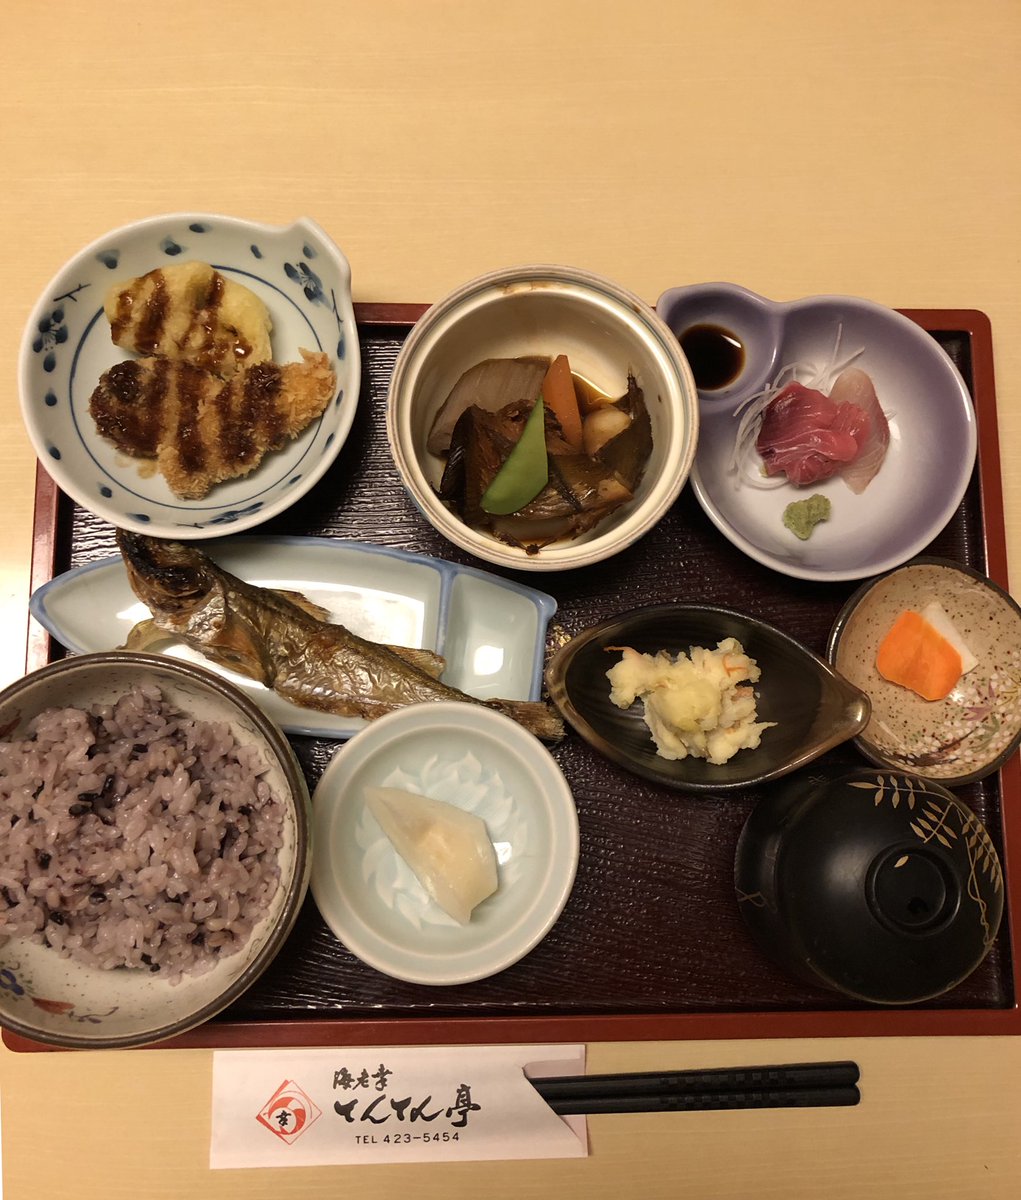 Yukashiro Nishida 今日の日替りランチは 本マグロお造り ハタハタ塩焼き シイラと蓮根のフライ カレイ煮付け 果物は呉羽梨です